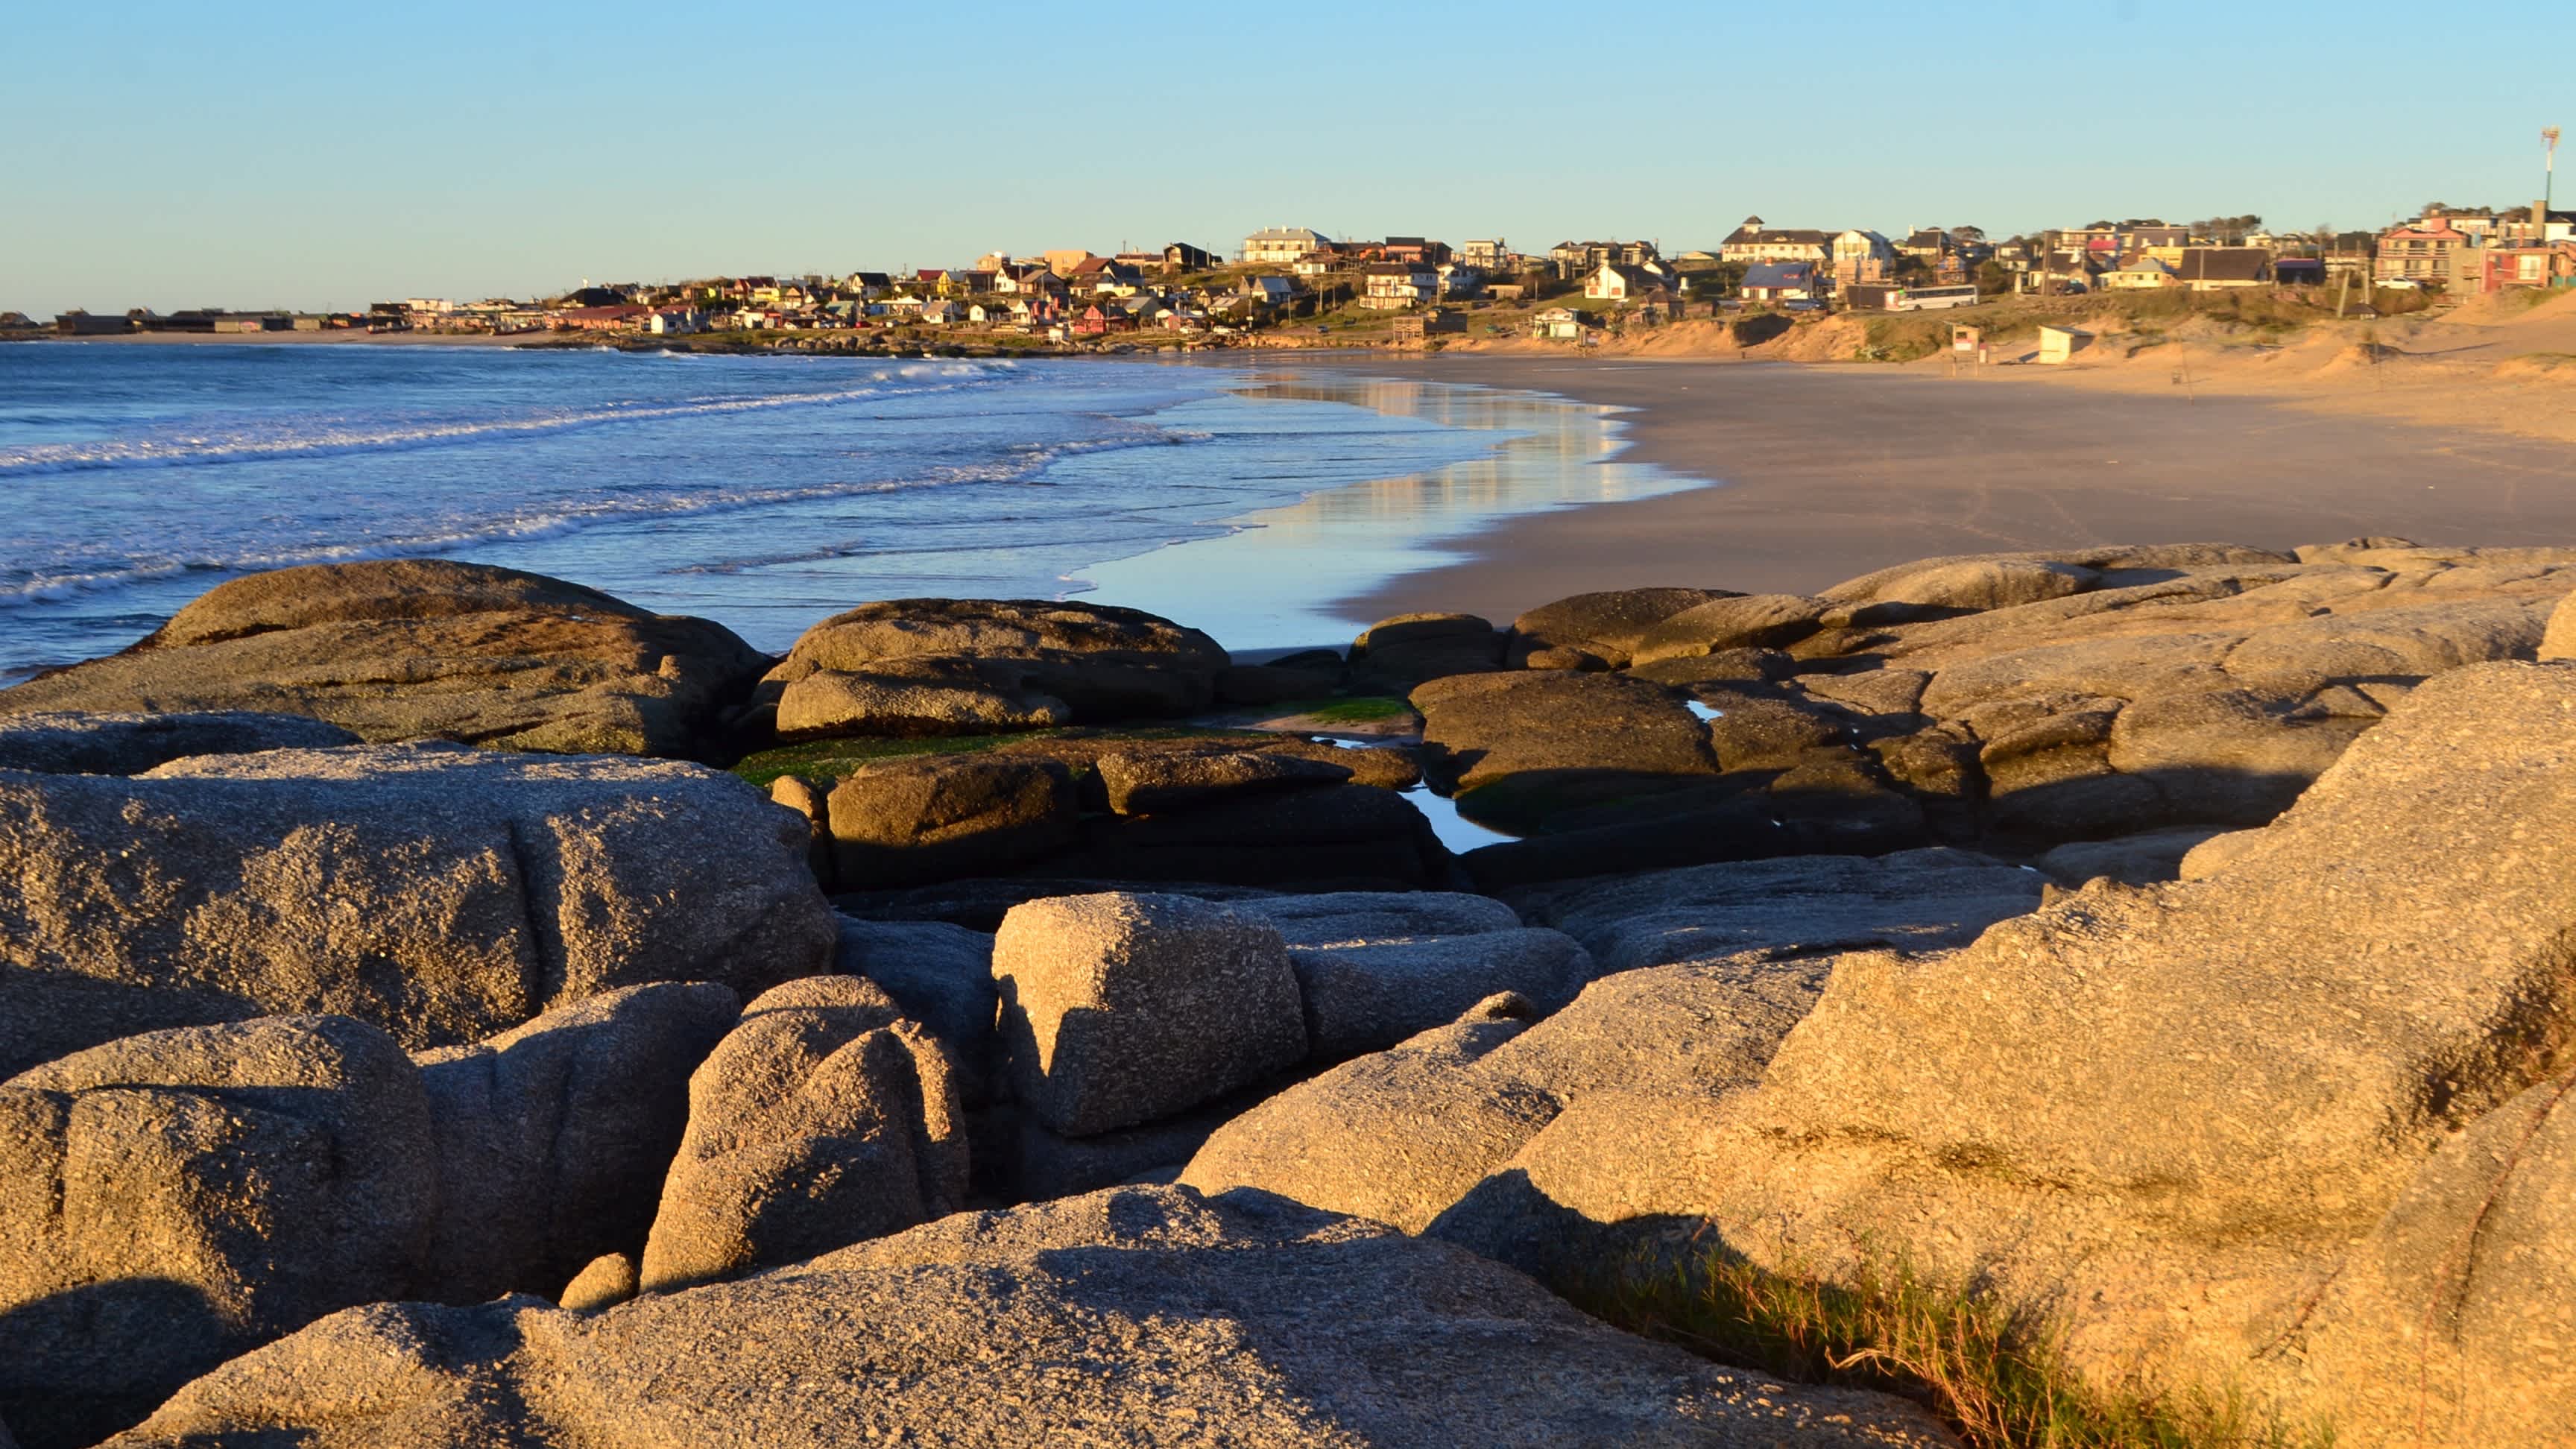 Blick auf den Rivero Strand in Punta del Diablo, Uruguay mit Felsen im Bild und bei Sonnenschein sowie die bebaute Küste.